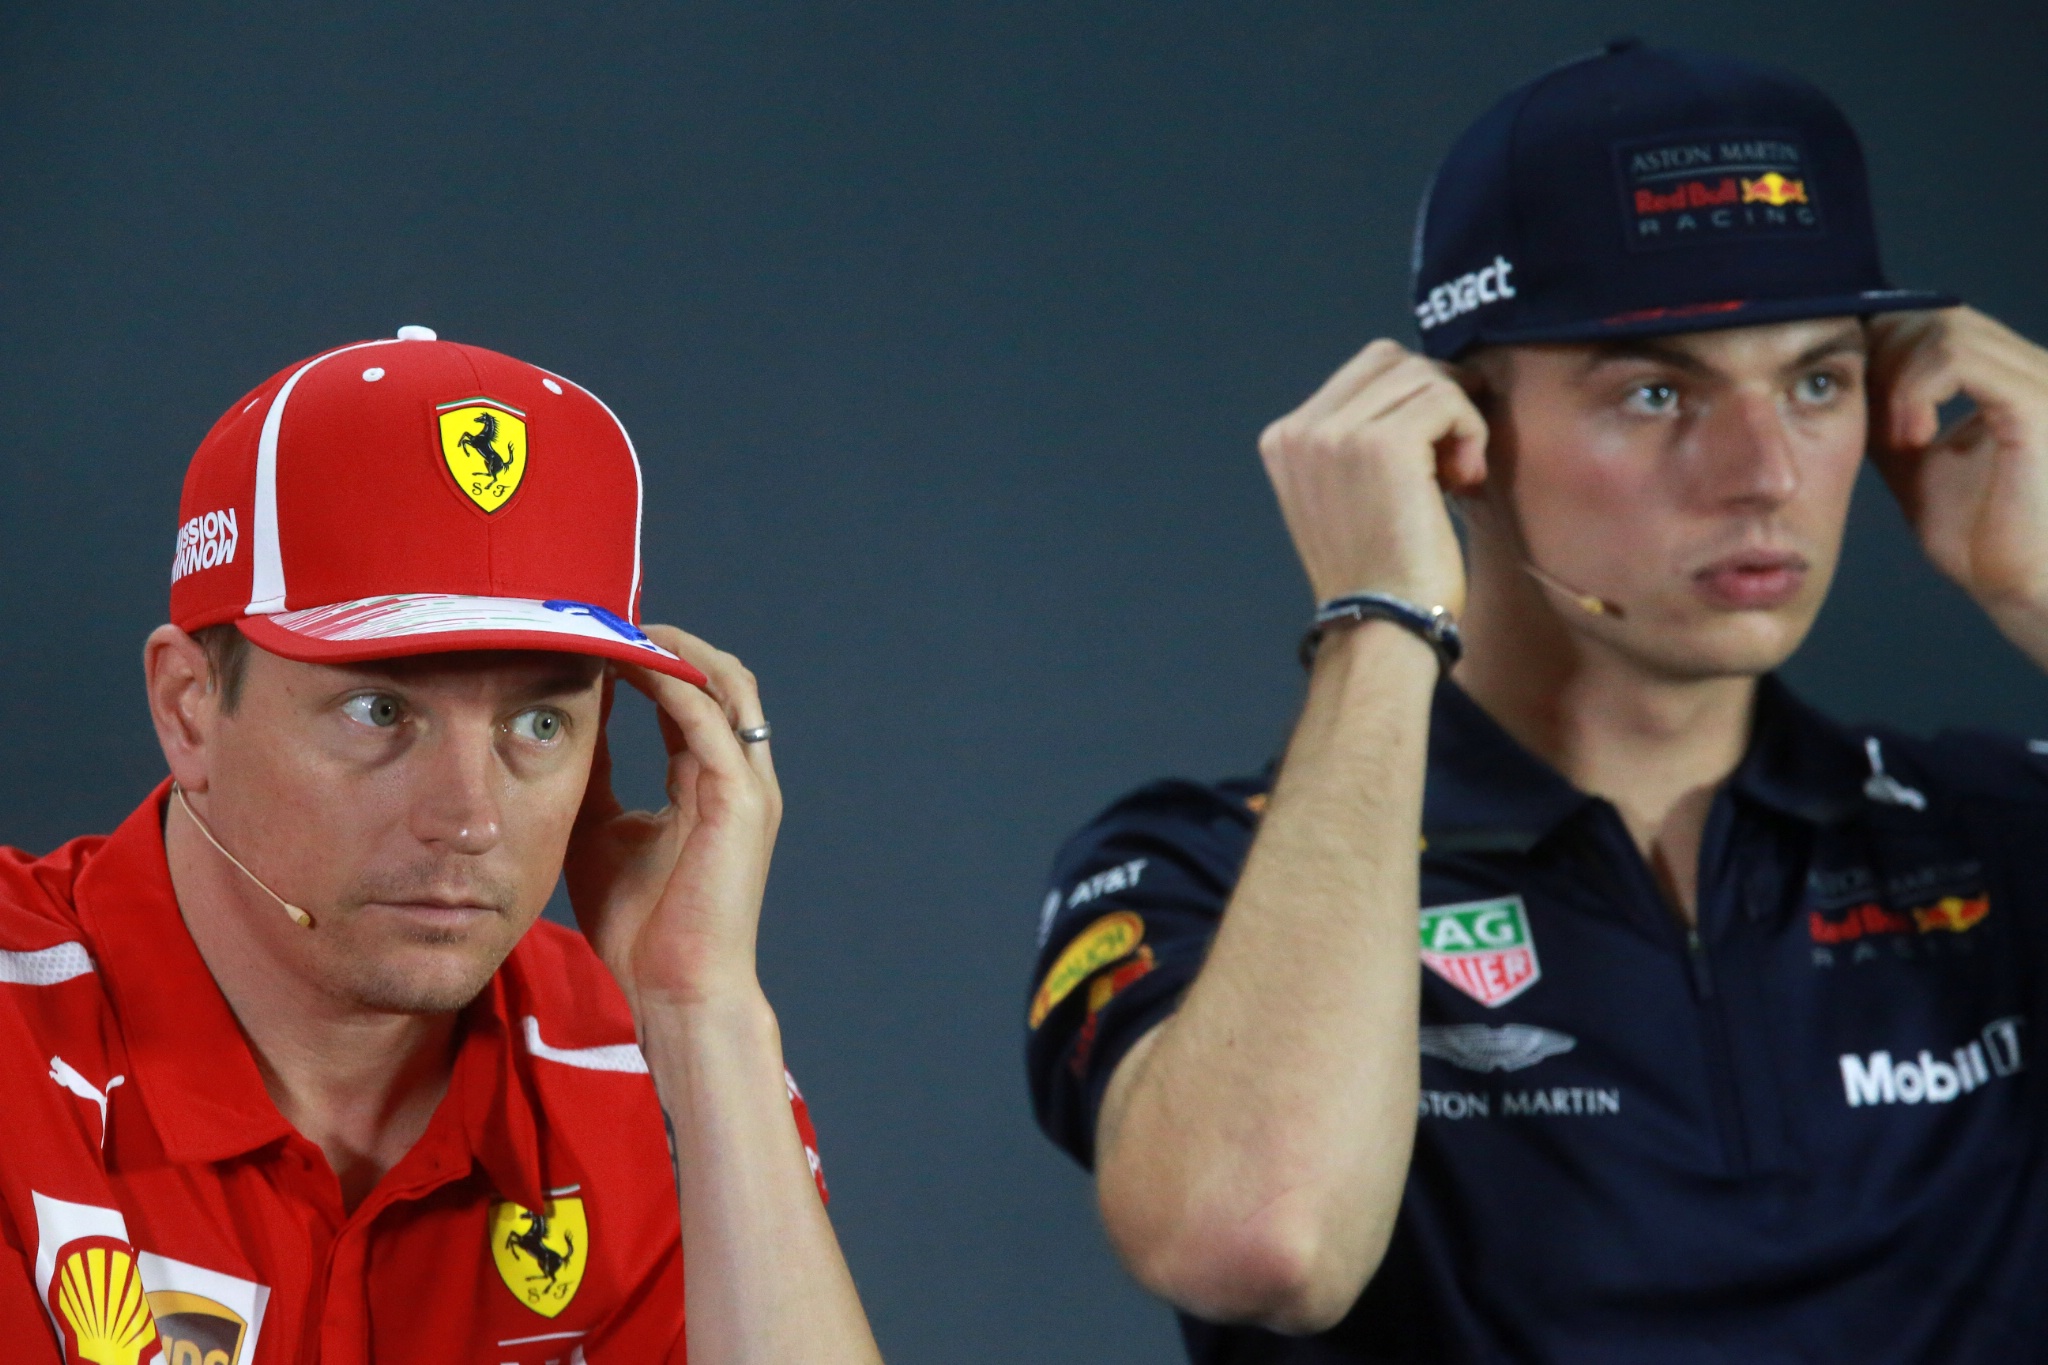  - Press conference, Kimi Raikkonen (FIN) Scuderia Ferrari SF71H and Max Verstappen (NED) Red Bull Racing